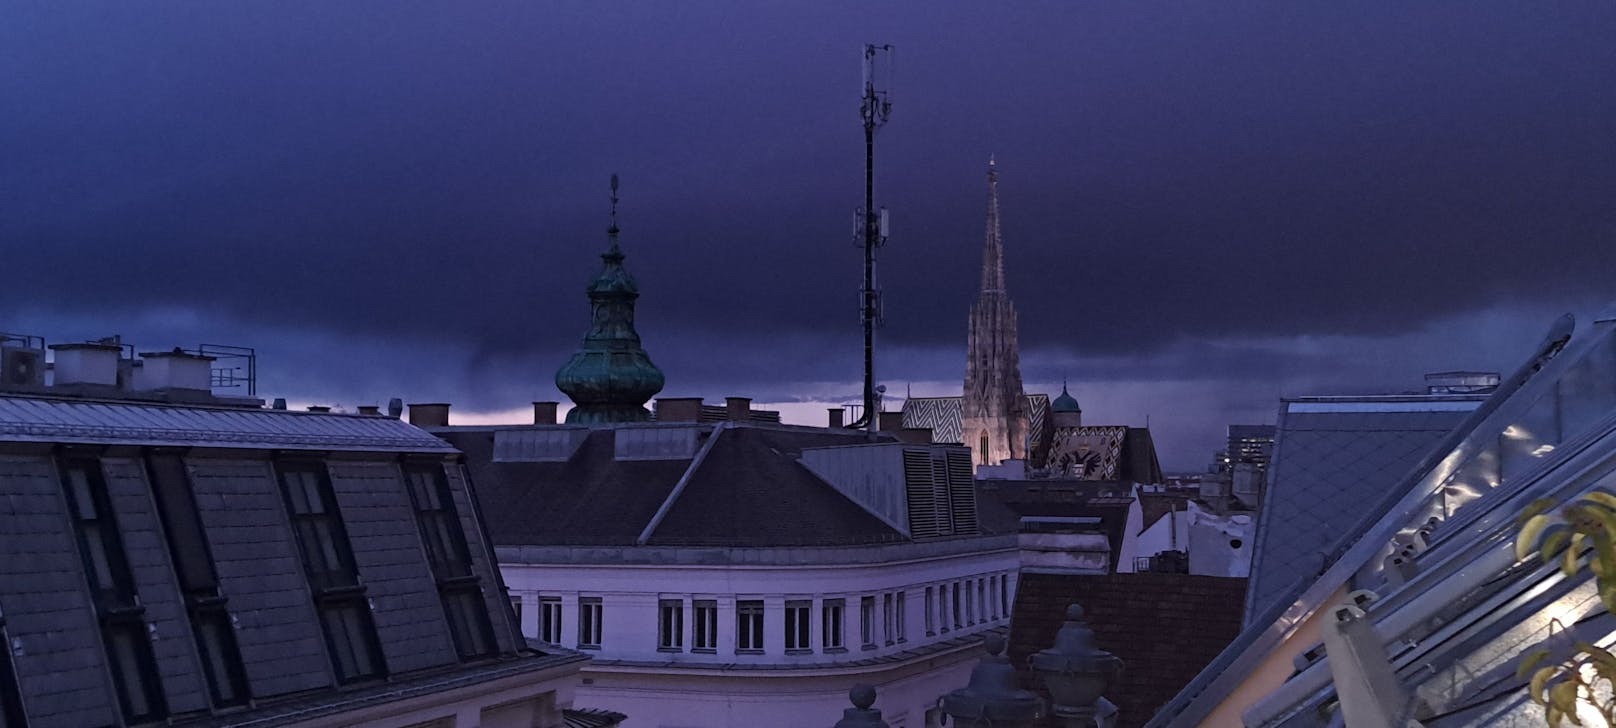 Ein heftiges Gewitter zieht über Wien